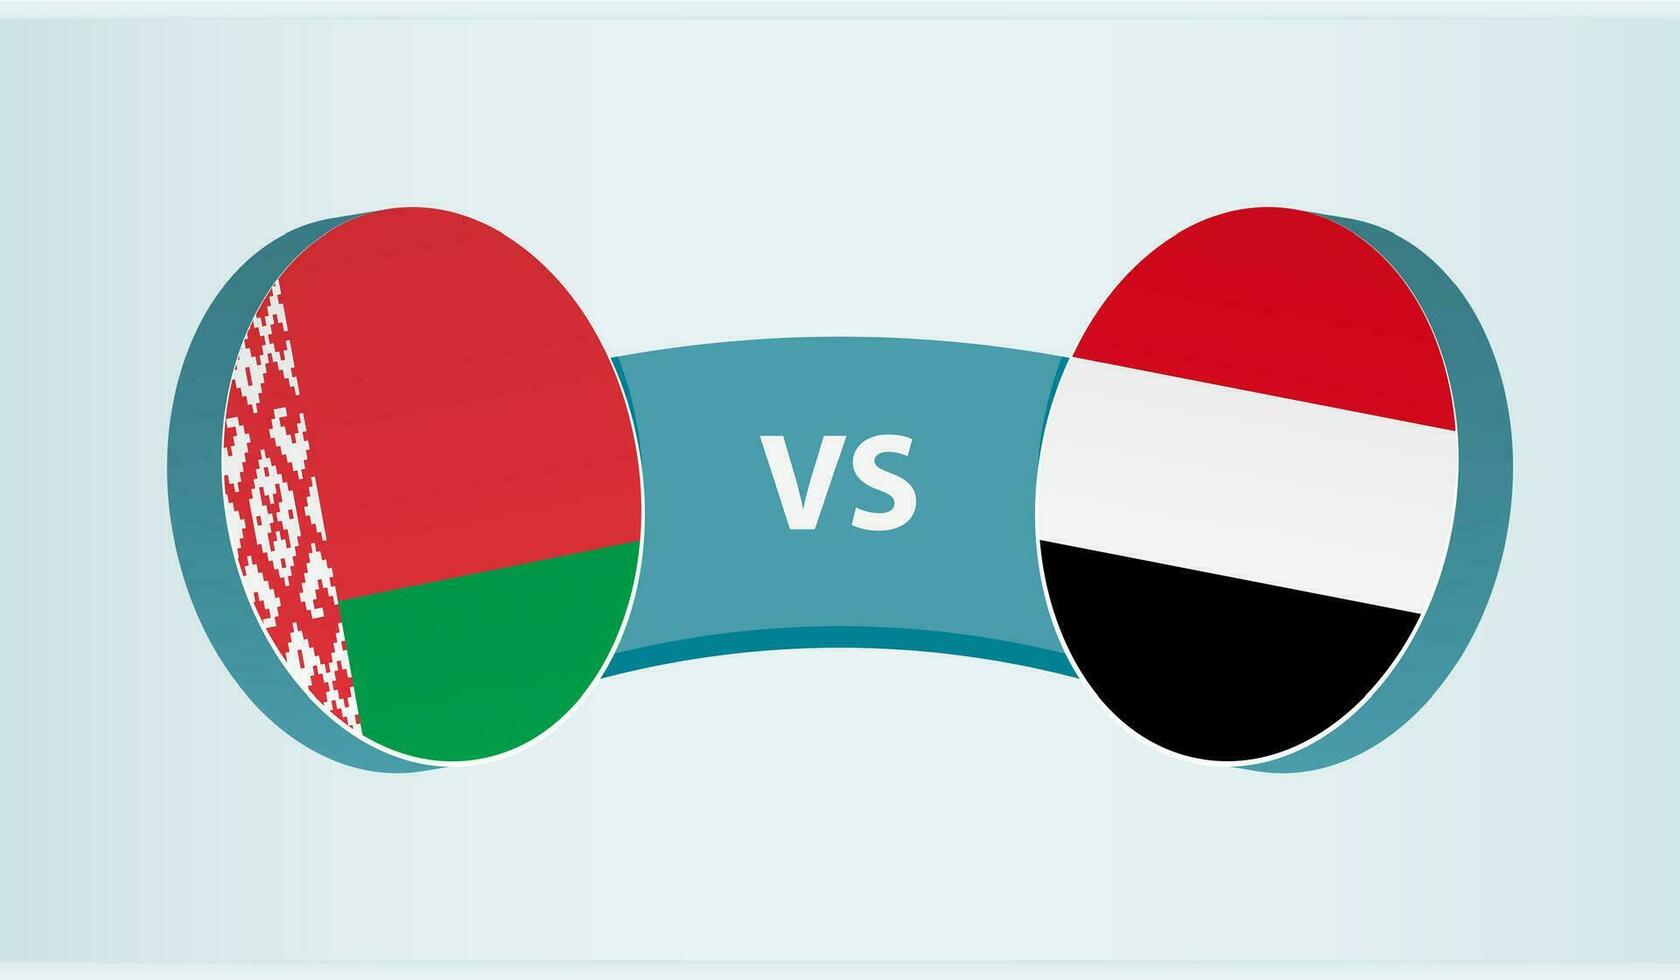 Belarus versus Yemen, team sports competition concept. vector